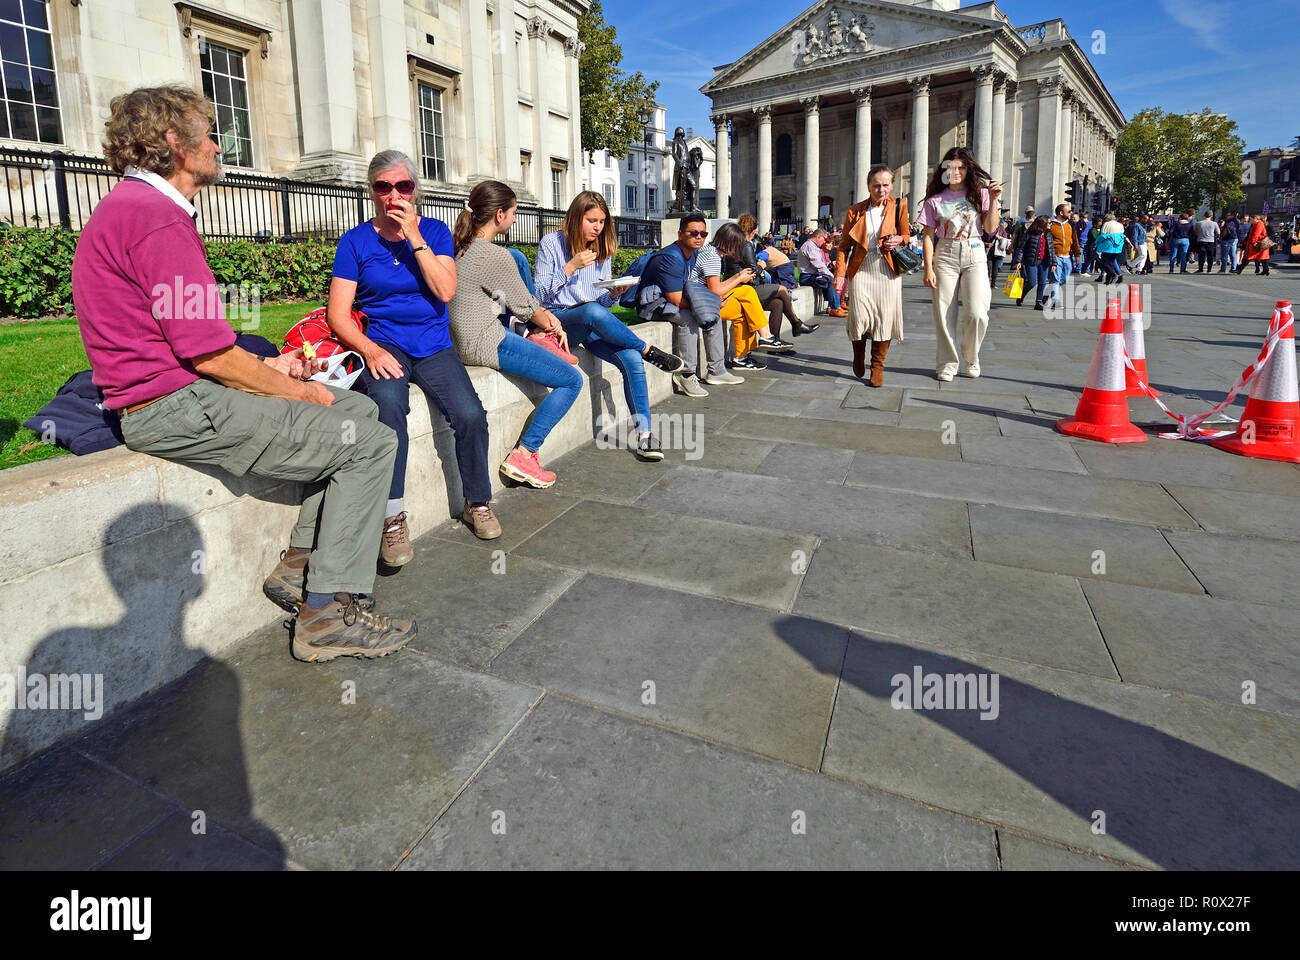 Menschen entspannend am Mittag vor der National Gallery am Trafalgar Square, London, England, UK. Stockfoto